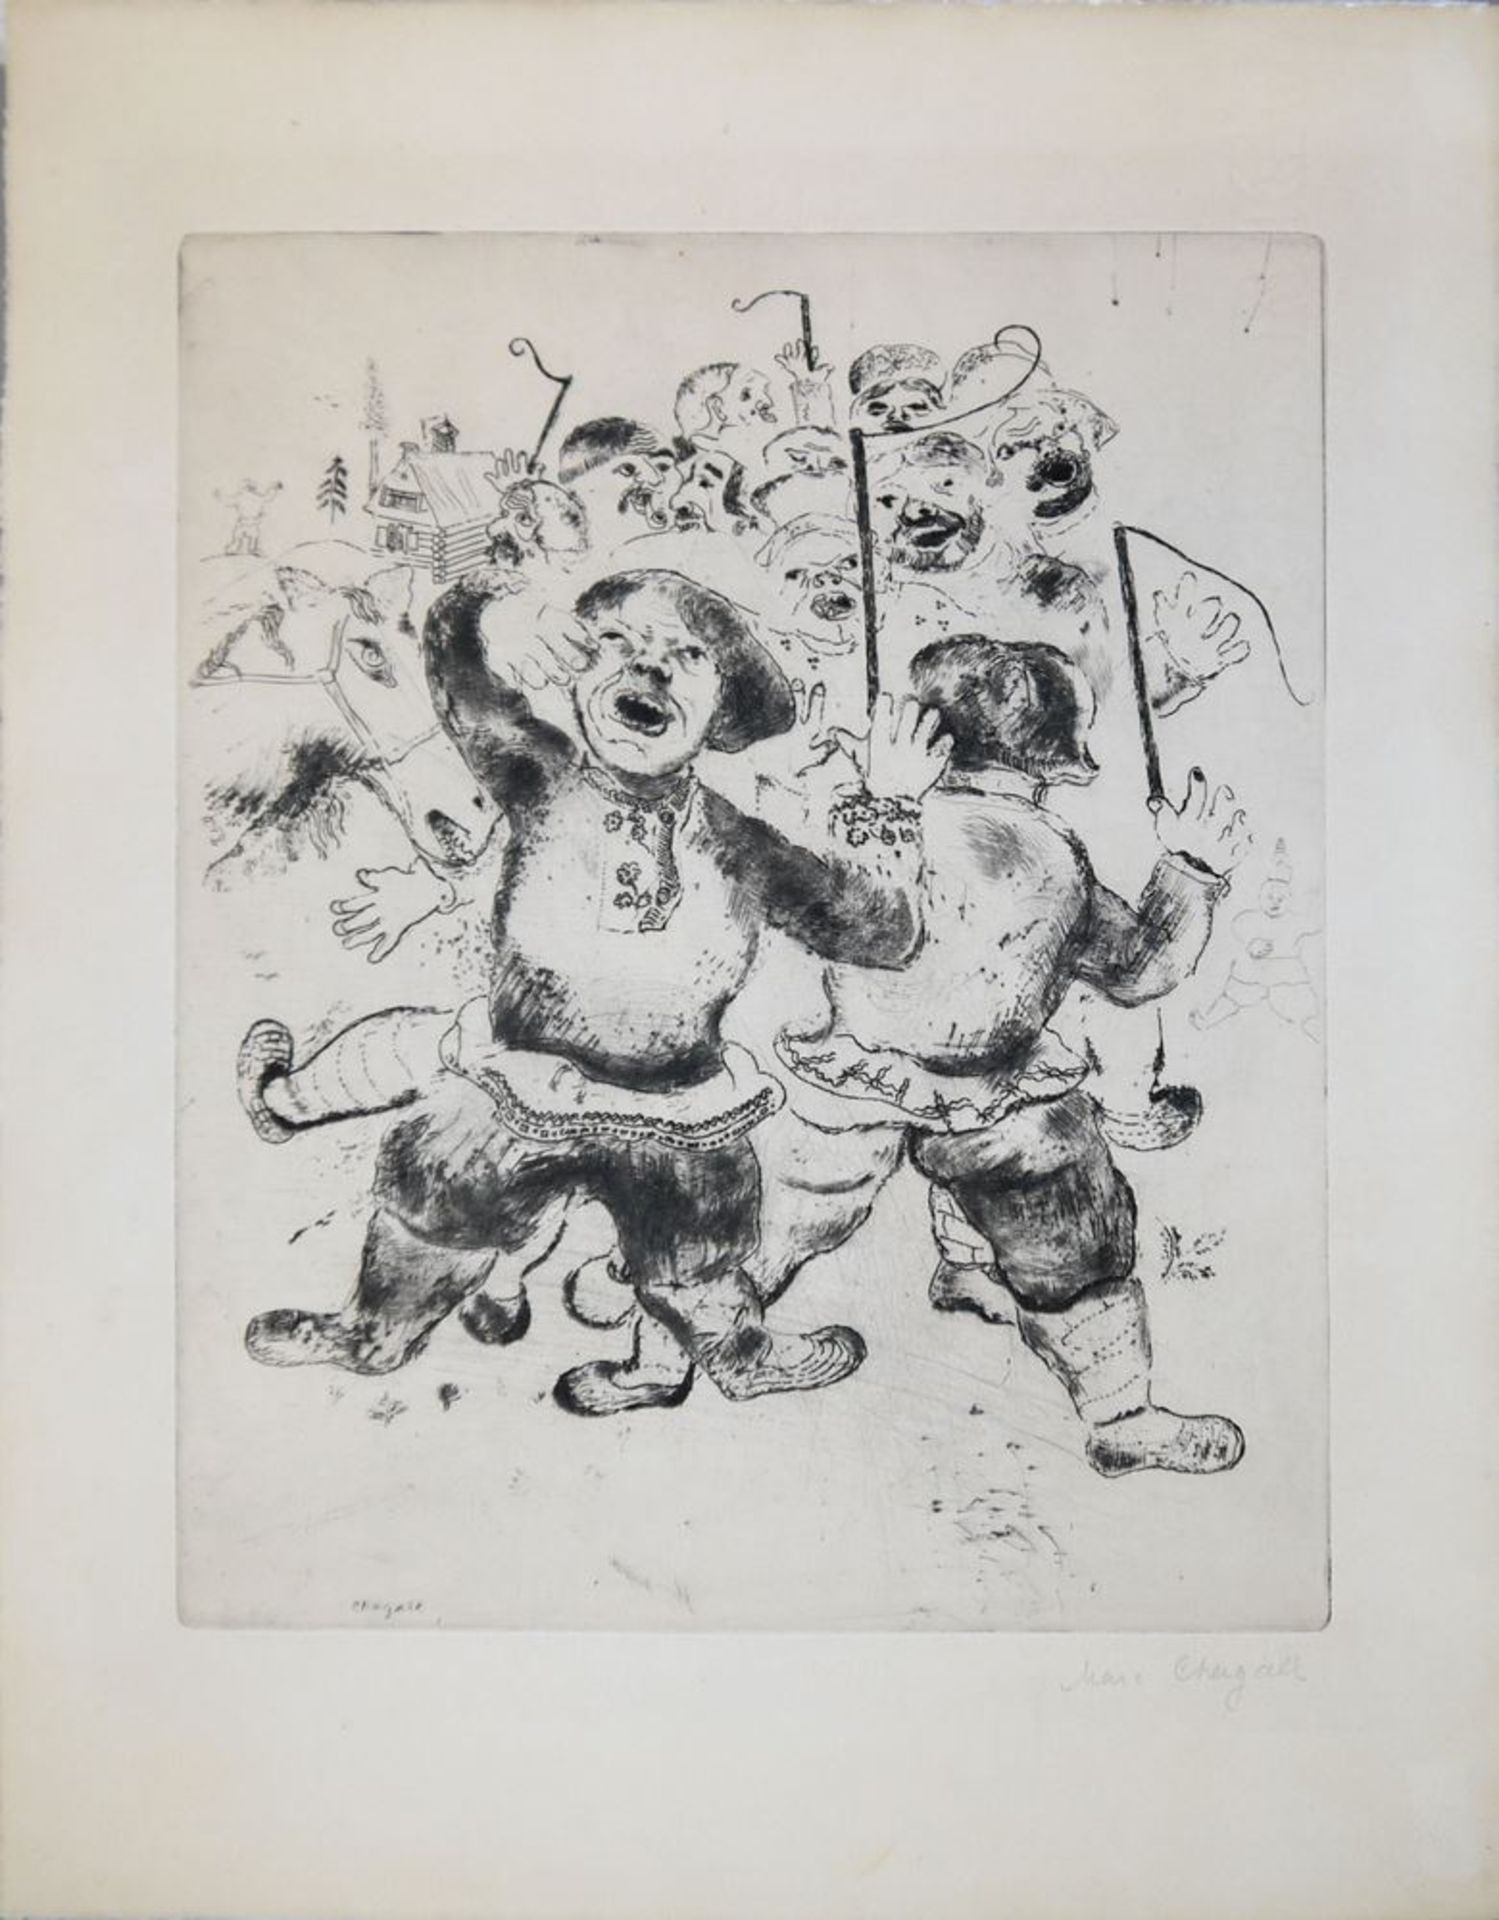 Marc Chagall, "Attroupement des Paysans" (Mob of Peasants), signierte Kaltnadelradierung aus "Les Â